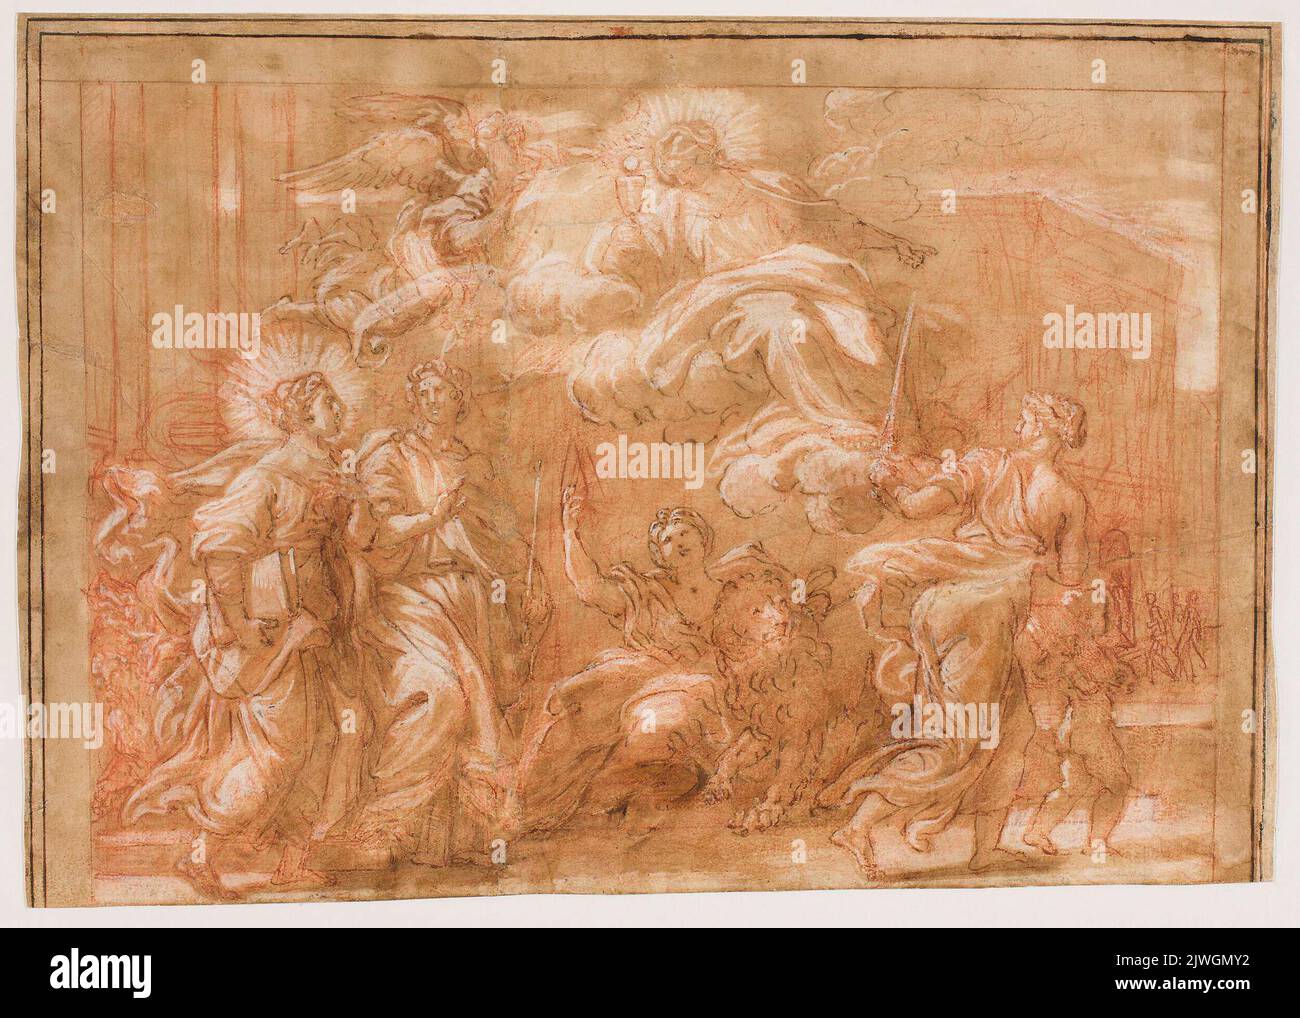 Allégorie de la foi catholique. Maratti, Carlo (1625-1713), dessinateur, dessinateur, Cortona, Pietro da (1596-1669), peintre Banque D'Images